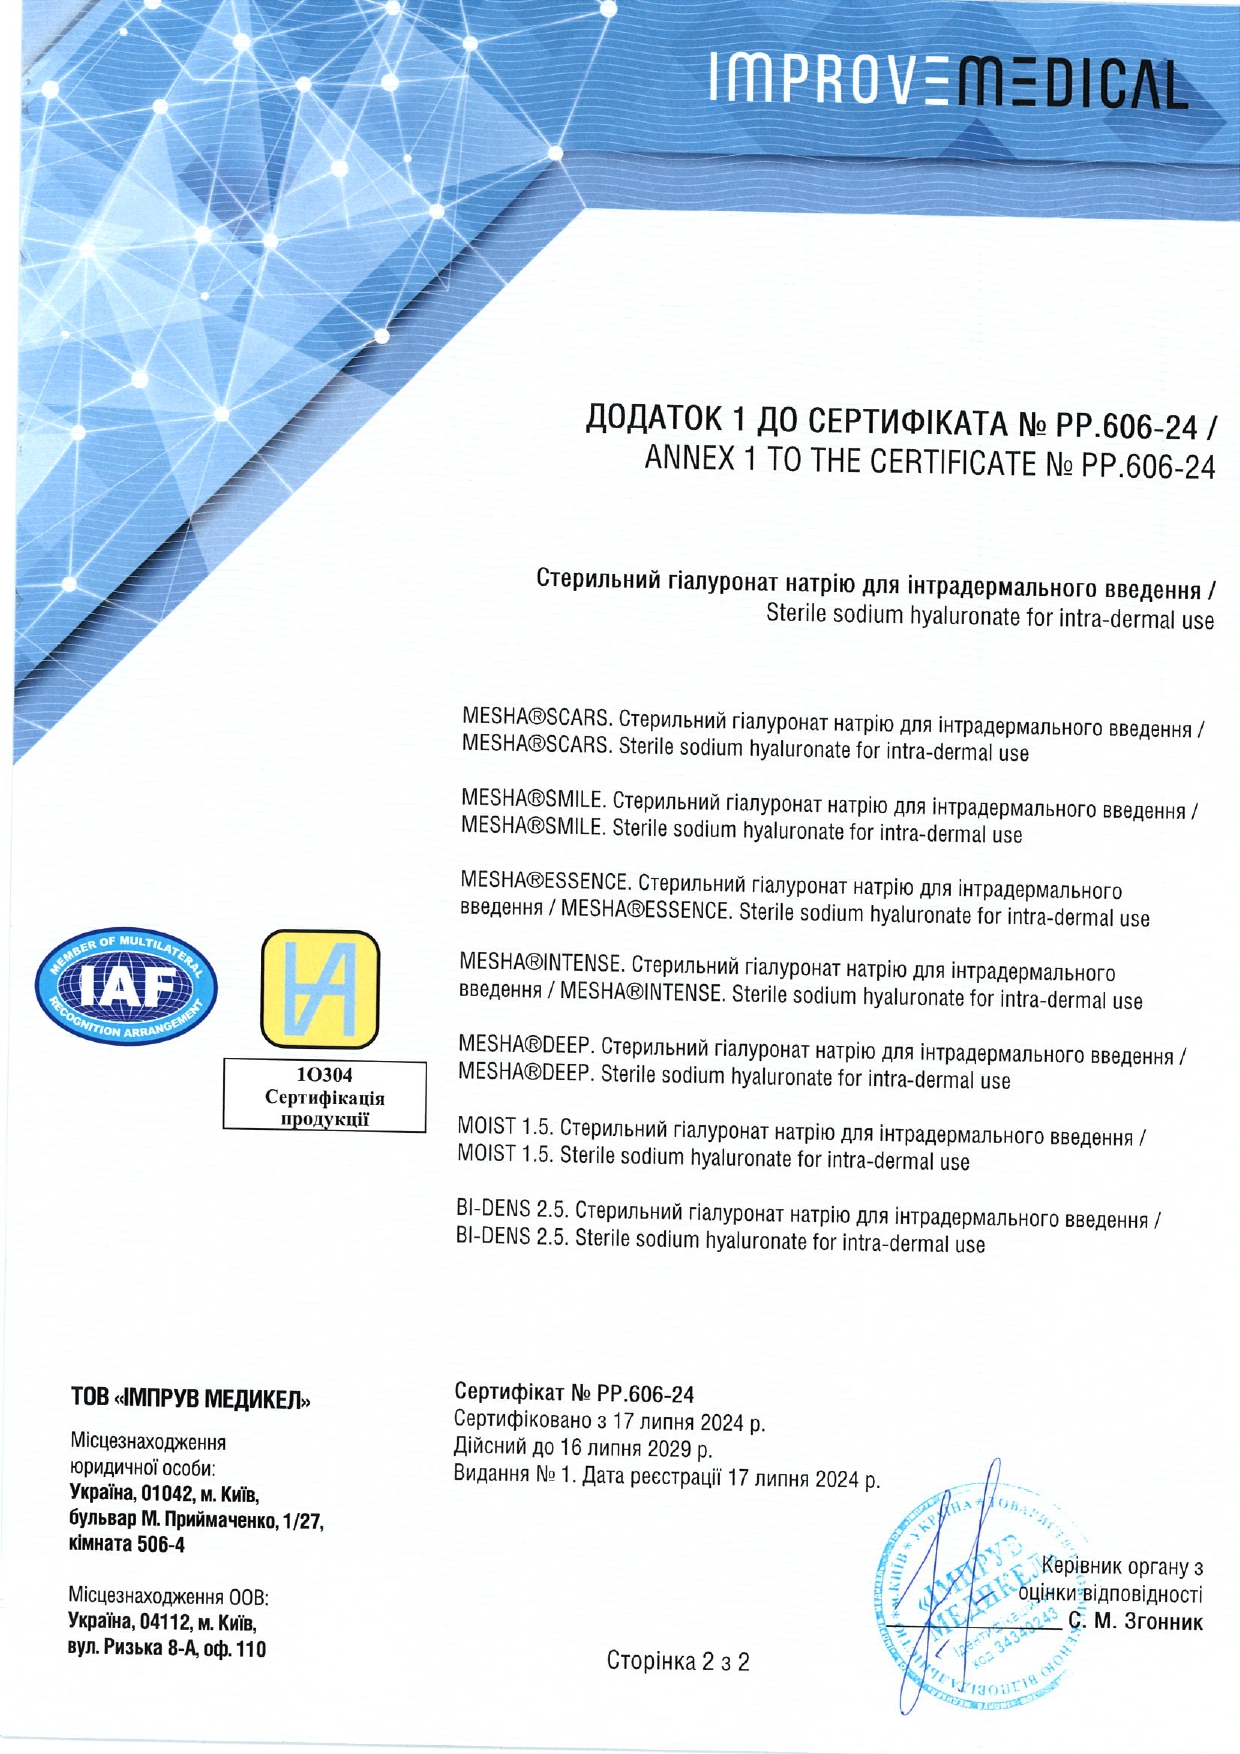 Косметика бренда Innoaesthetics - сертификат качества 9